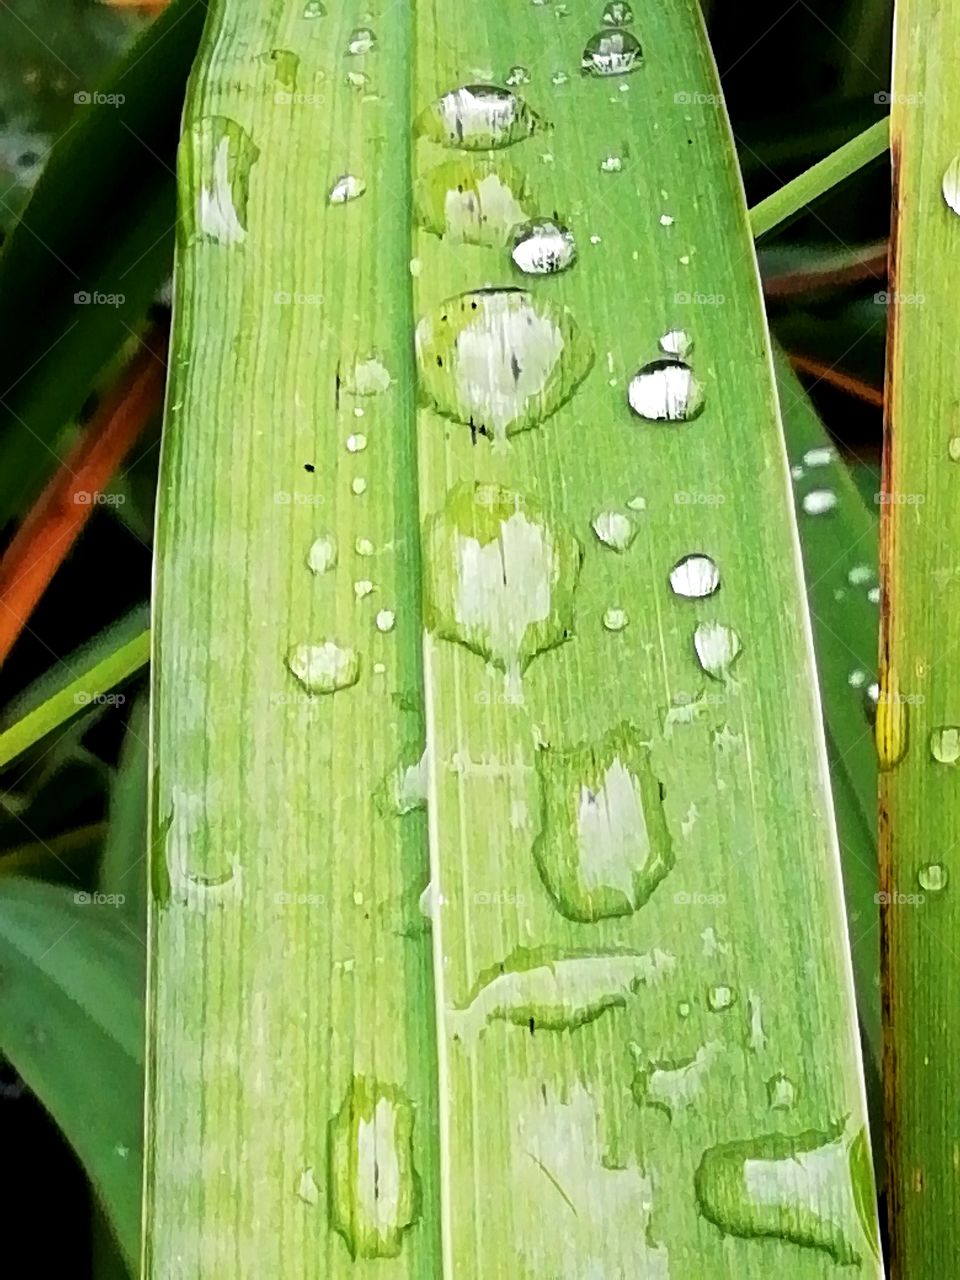 Raindrops on leaf